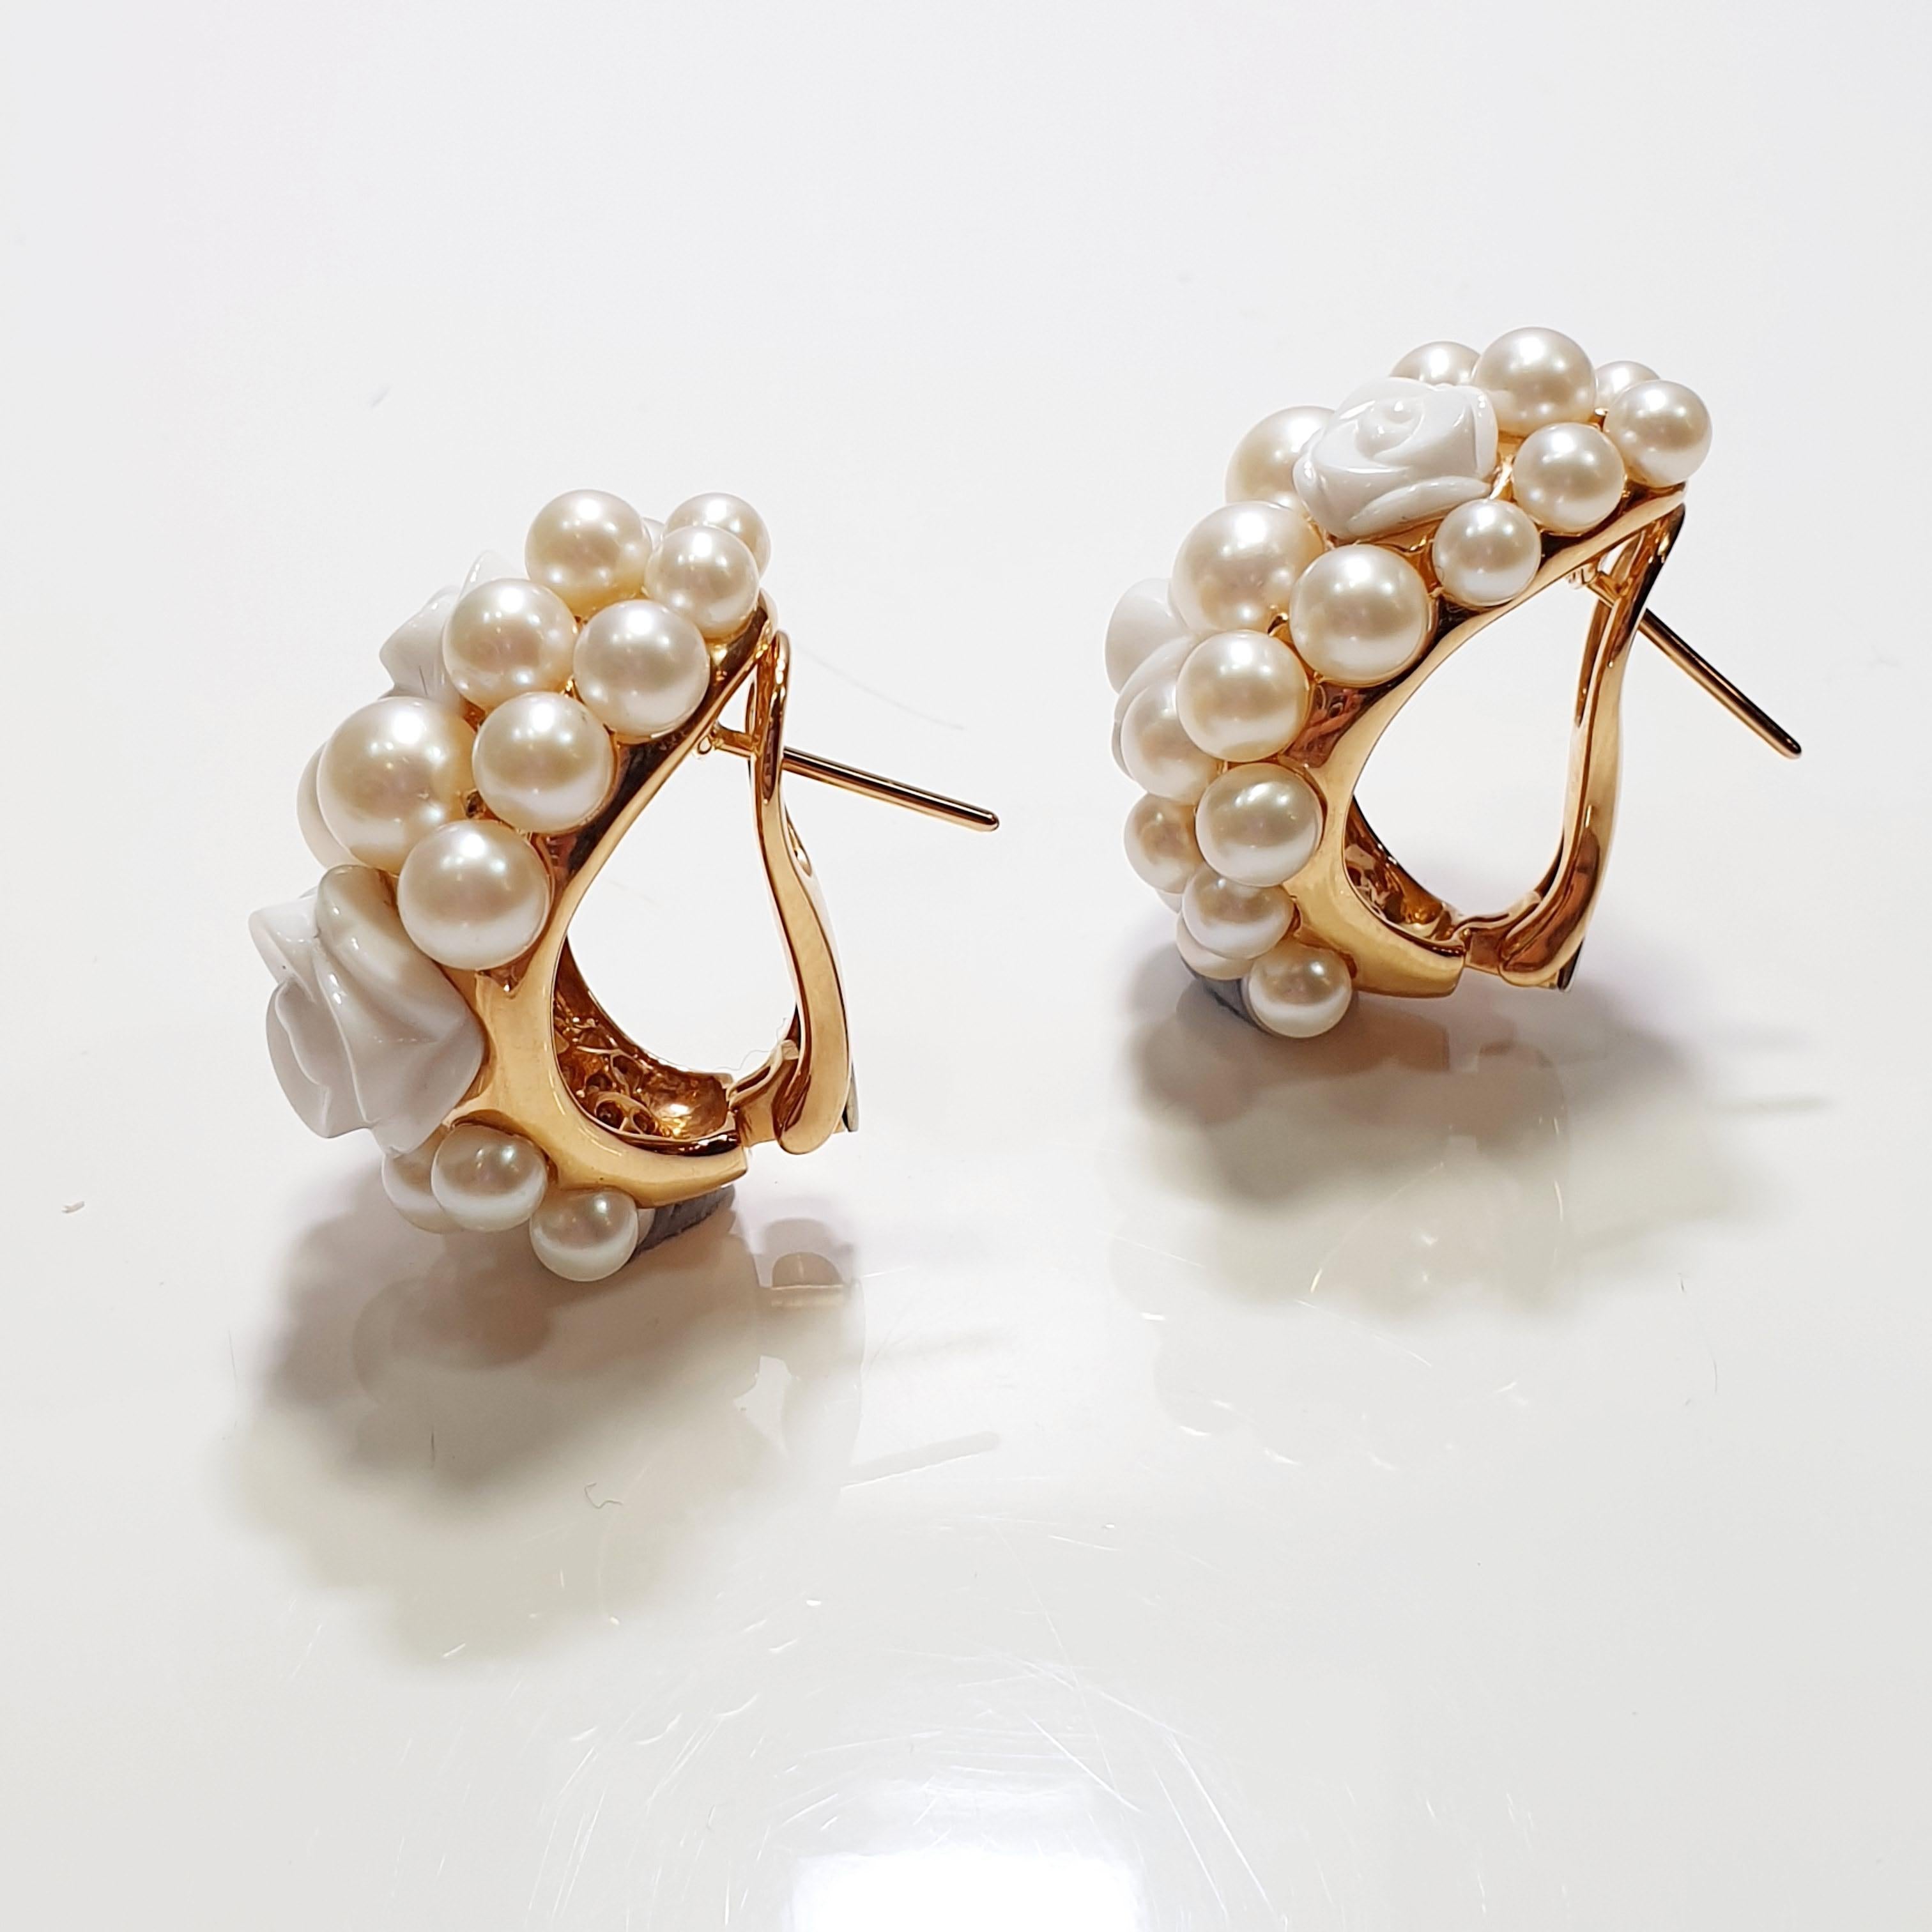 Une fabuleuse boucle d'oreille Clío de Mimi Milano présentant un nid de perles cultivées blanches et brillantes avec des fleurs d'agate en clip sur magnifique fabriqué en or rose 18k.
Authentique, spontanée, pleine d'esprit. Simplement MIMI,